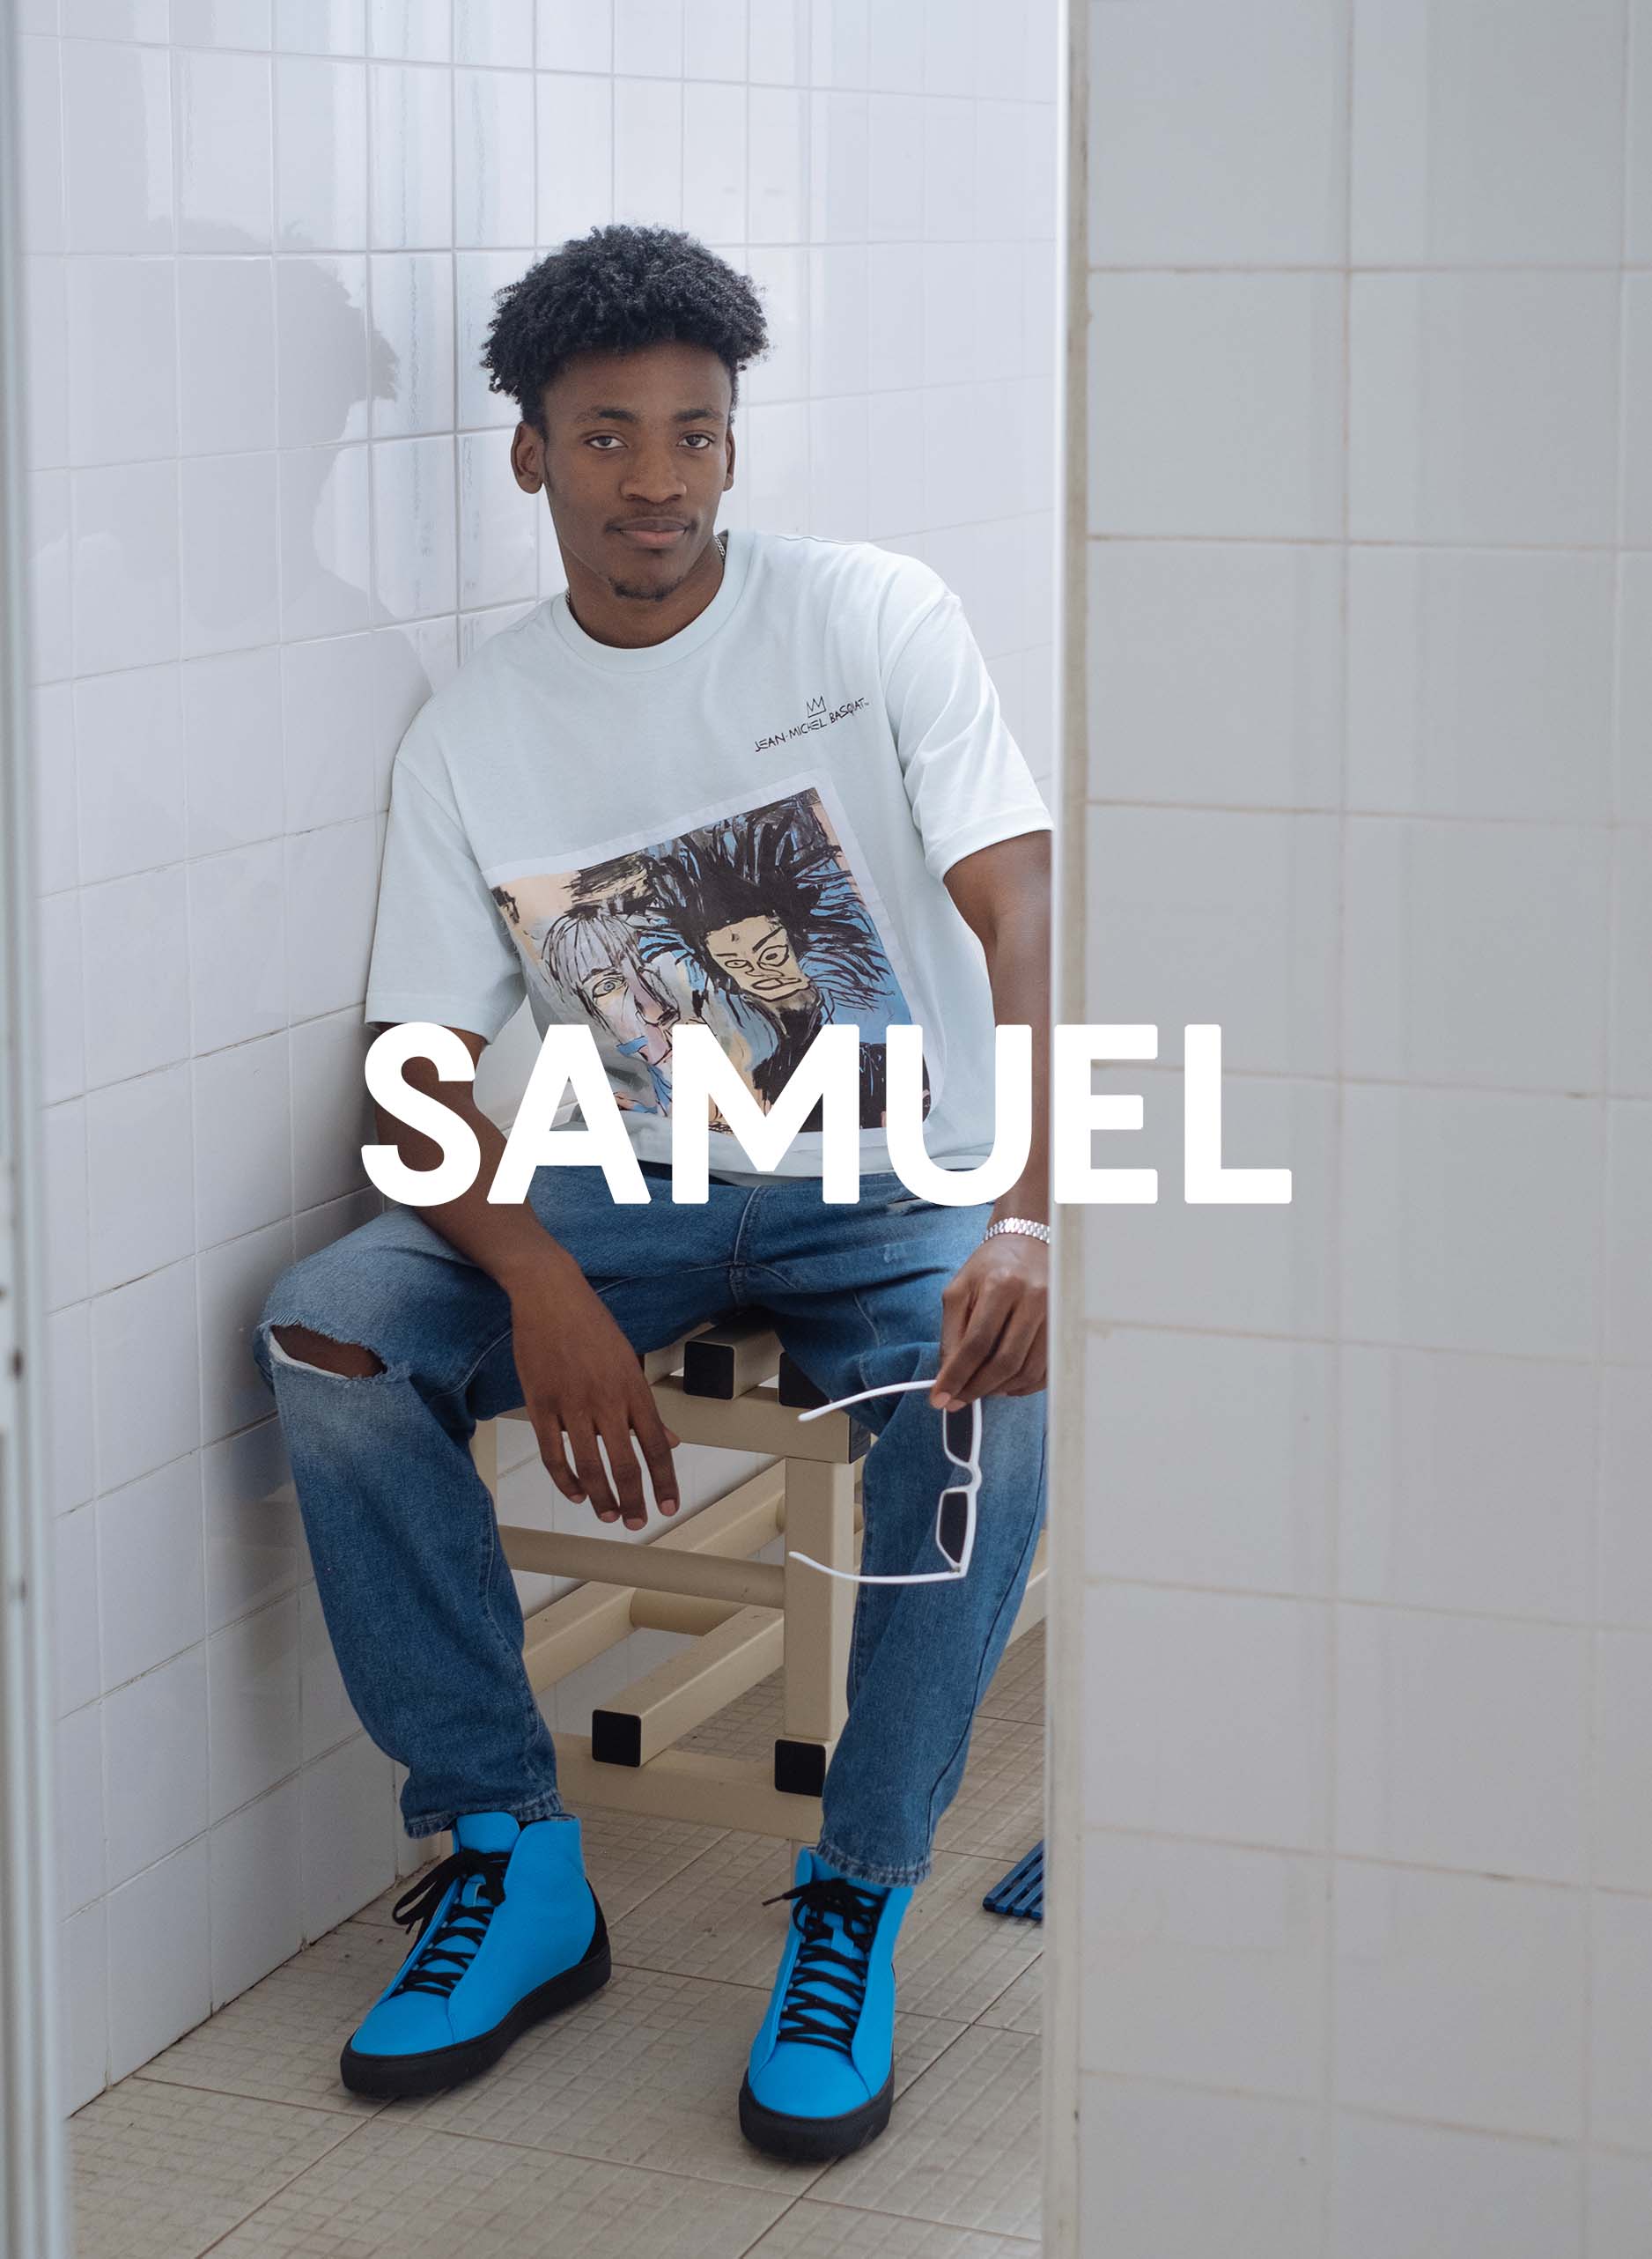 Samuel vistiendo Diverge sneakers y mostrar el impacto social y los zapatos personalizados a través del proyecto Imagine.